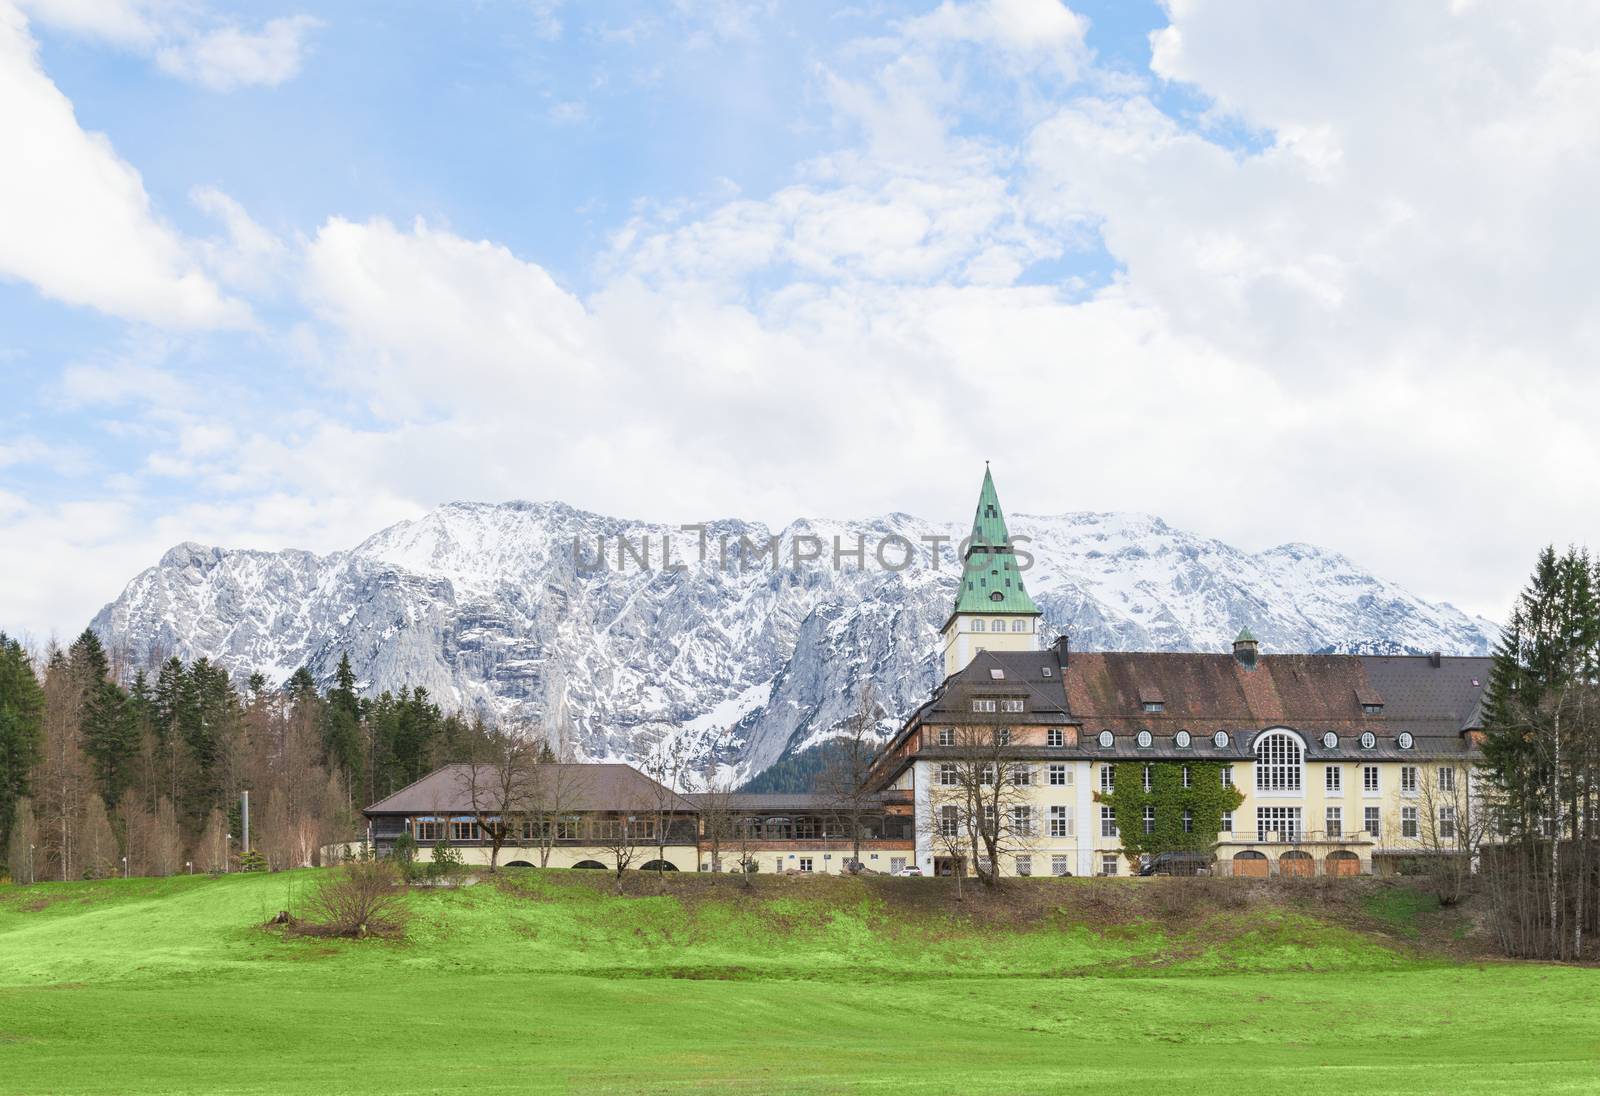 Hotel Schloss Elmau in Bavarian Alpine valley G7 summit 2015 by servickuz